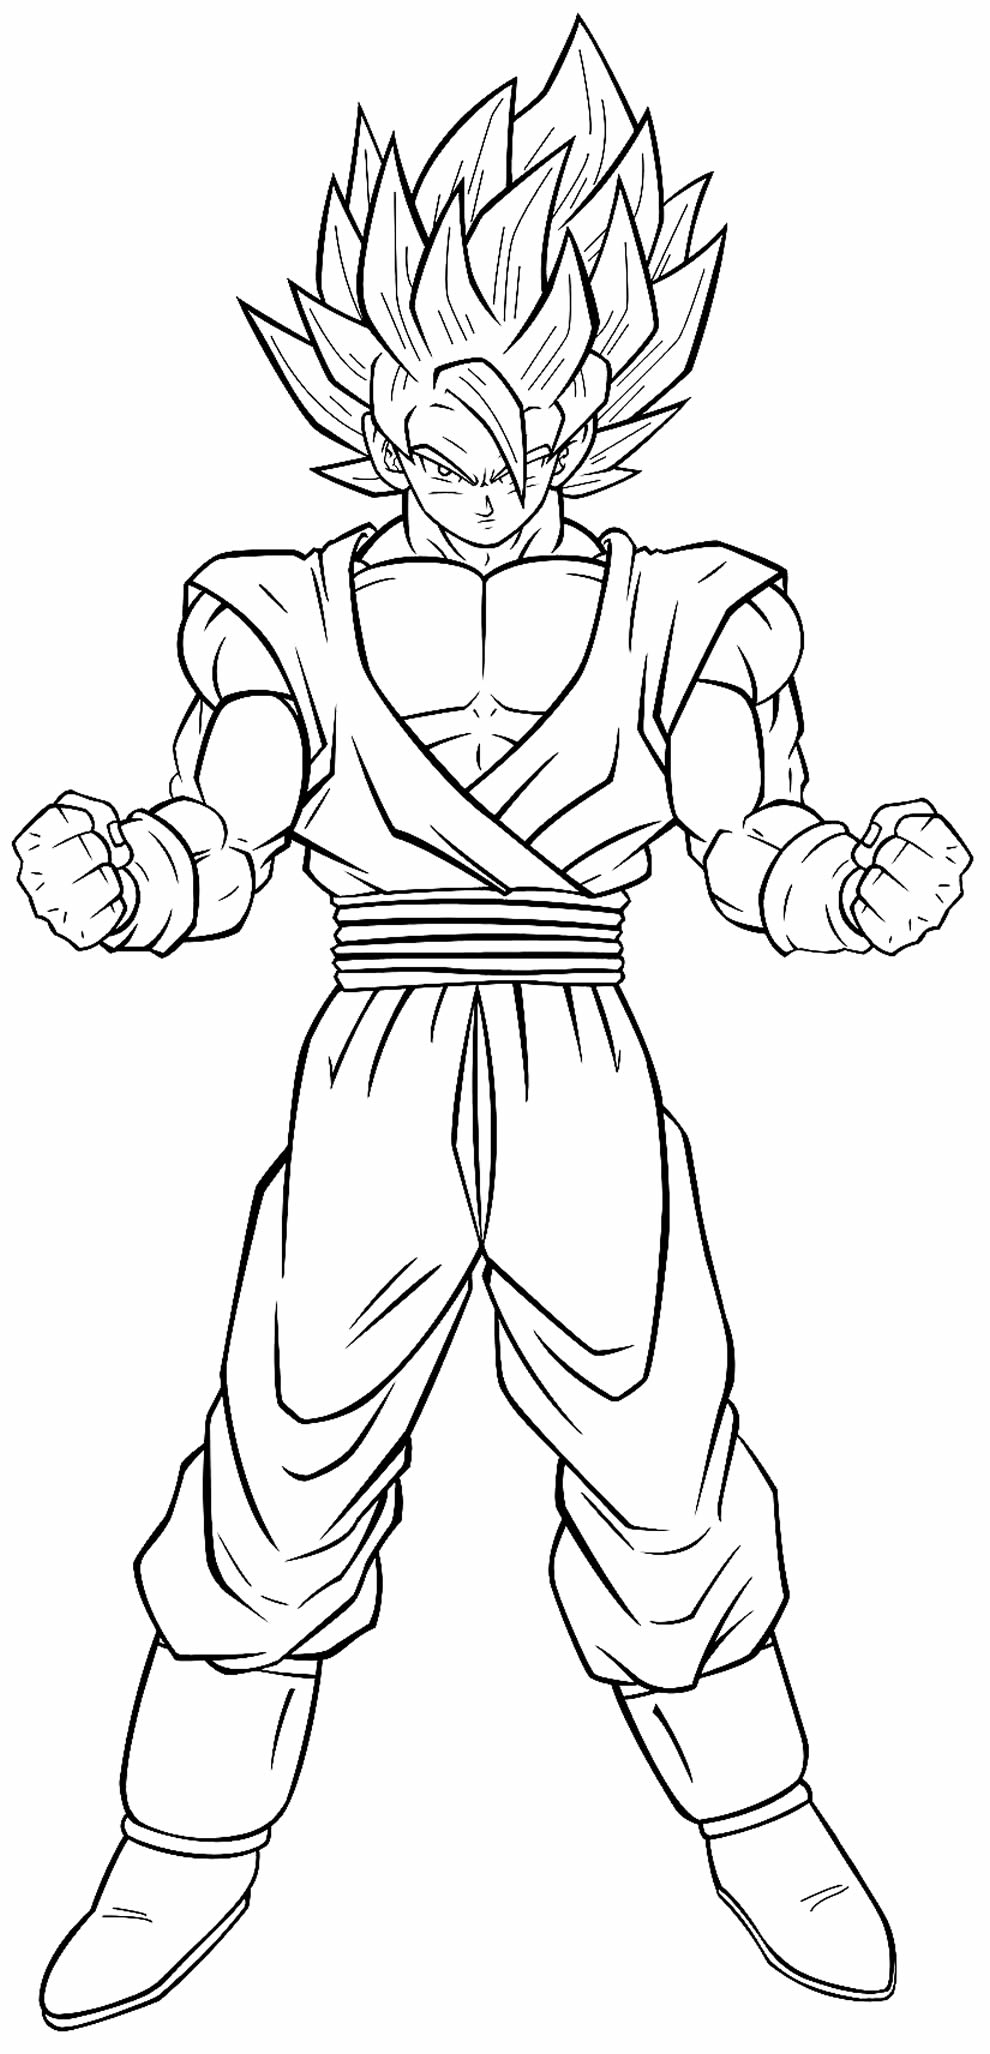 Imagem para colorir de Goku